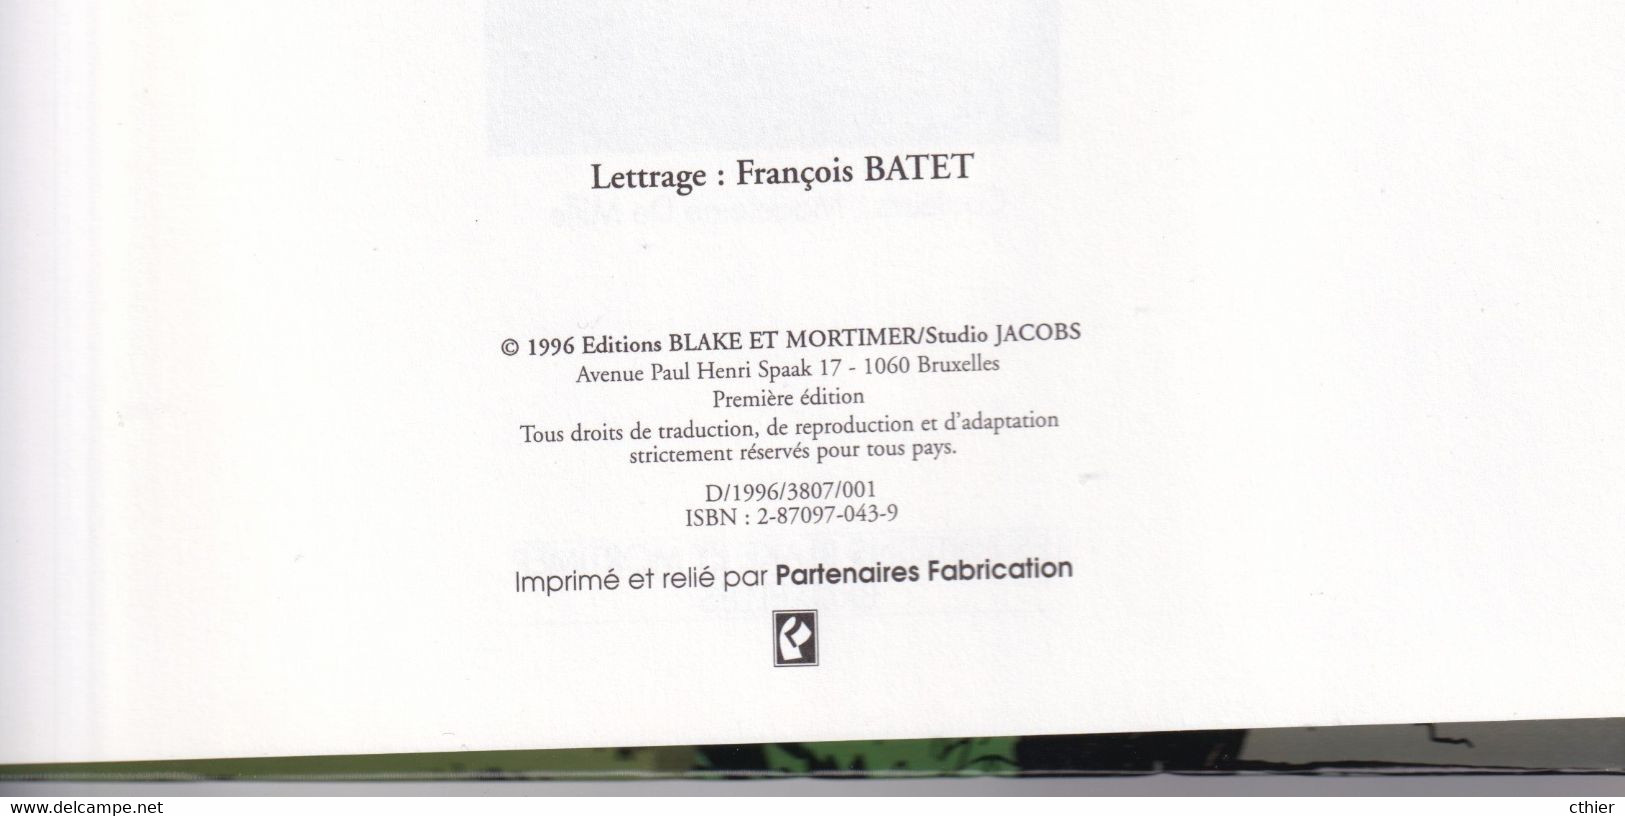 BLAKE ET MORTIMER - 13 - Edition Originale 1996 - L'affaire Francis Blake - Blake Et Mortimer